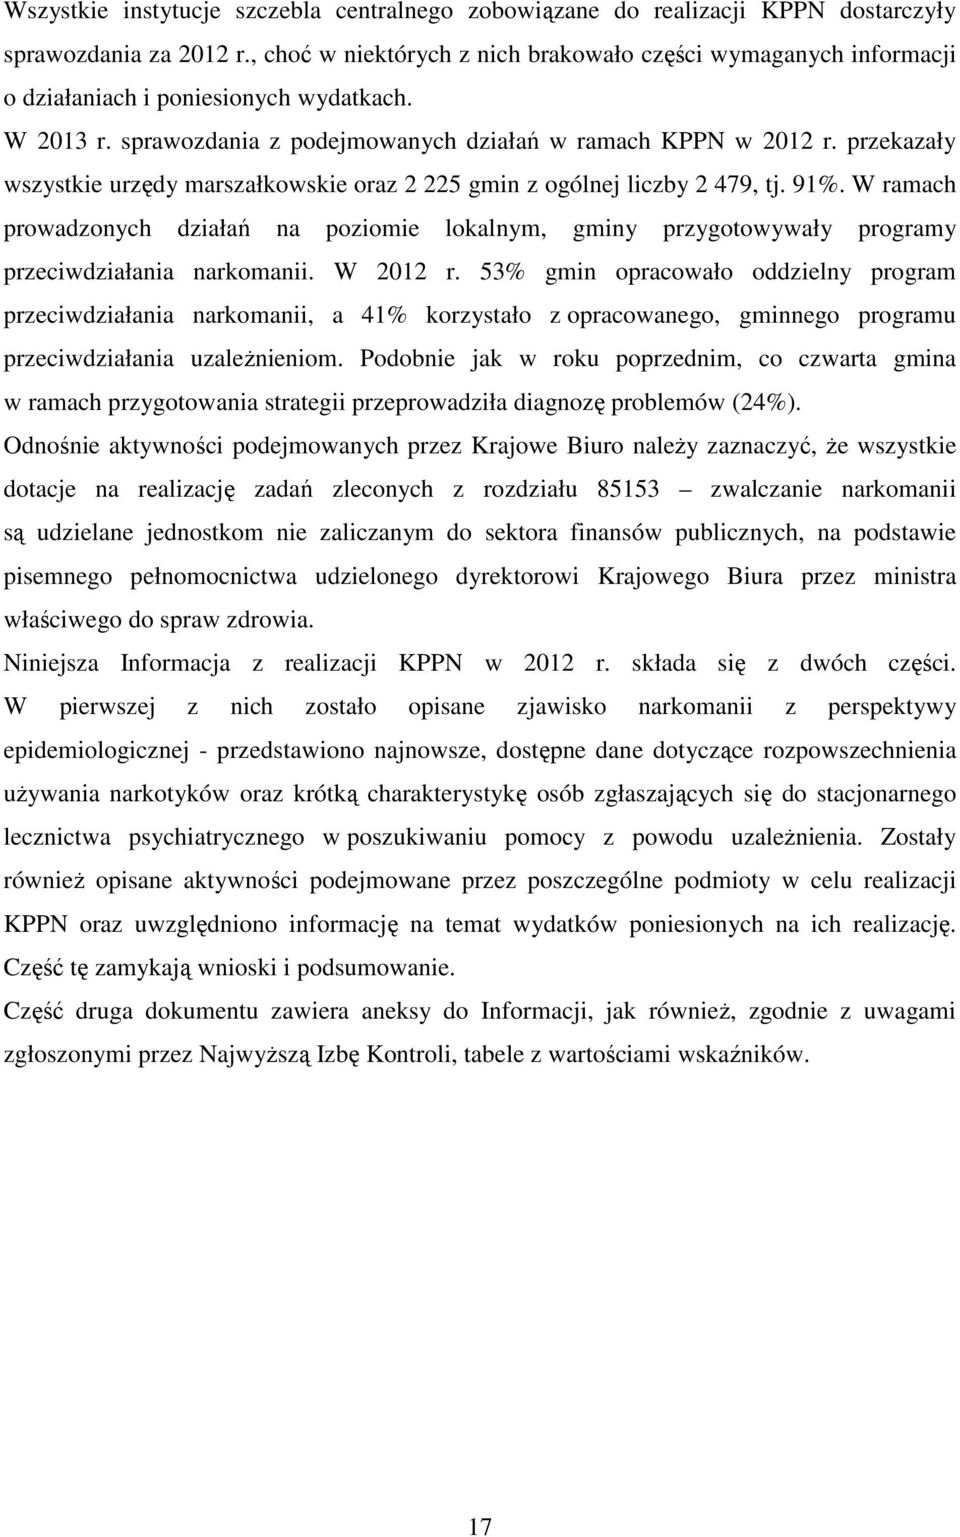 przekazały wszystkie urzędy marszałkowskie oraz 2 225 gmin z ogólnej liczby 2 479, tj. 91%.